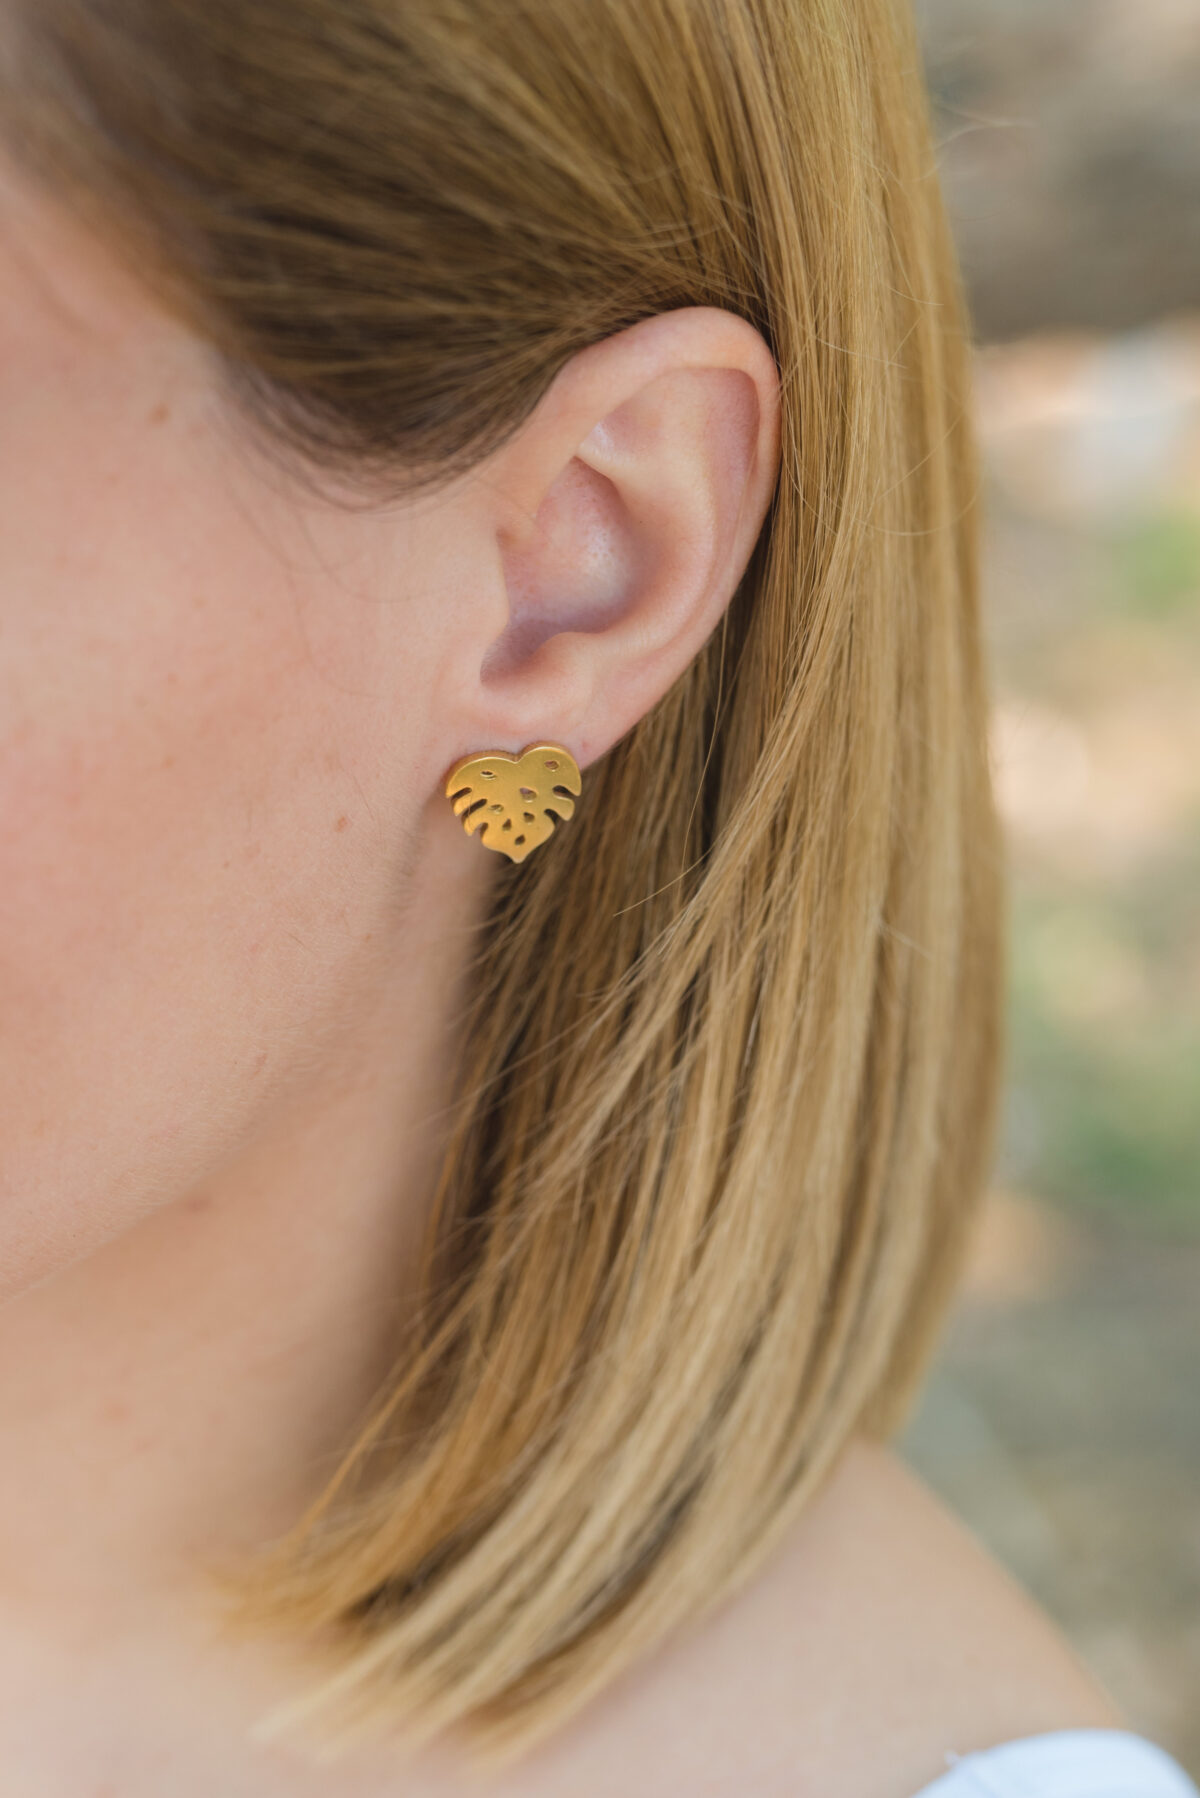 Tropical earrings Tropical earrings Tropical earrings 6